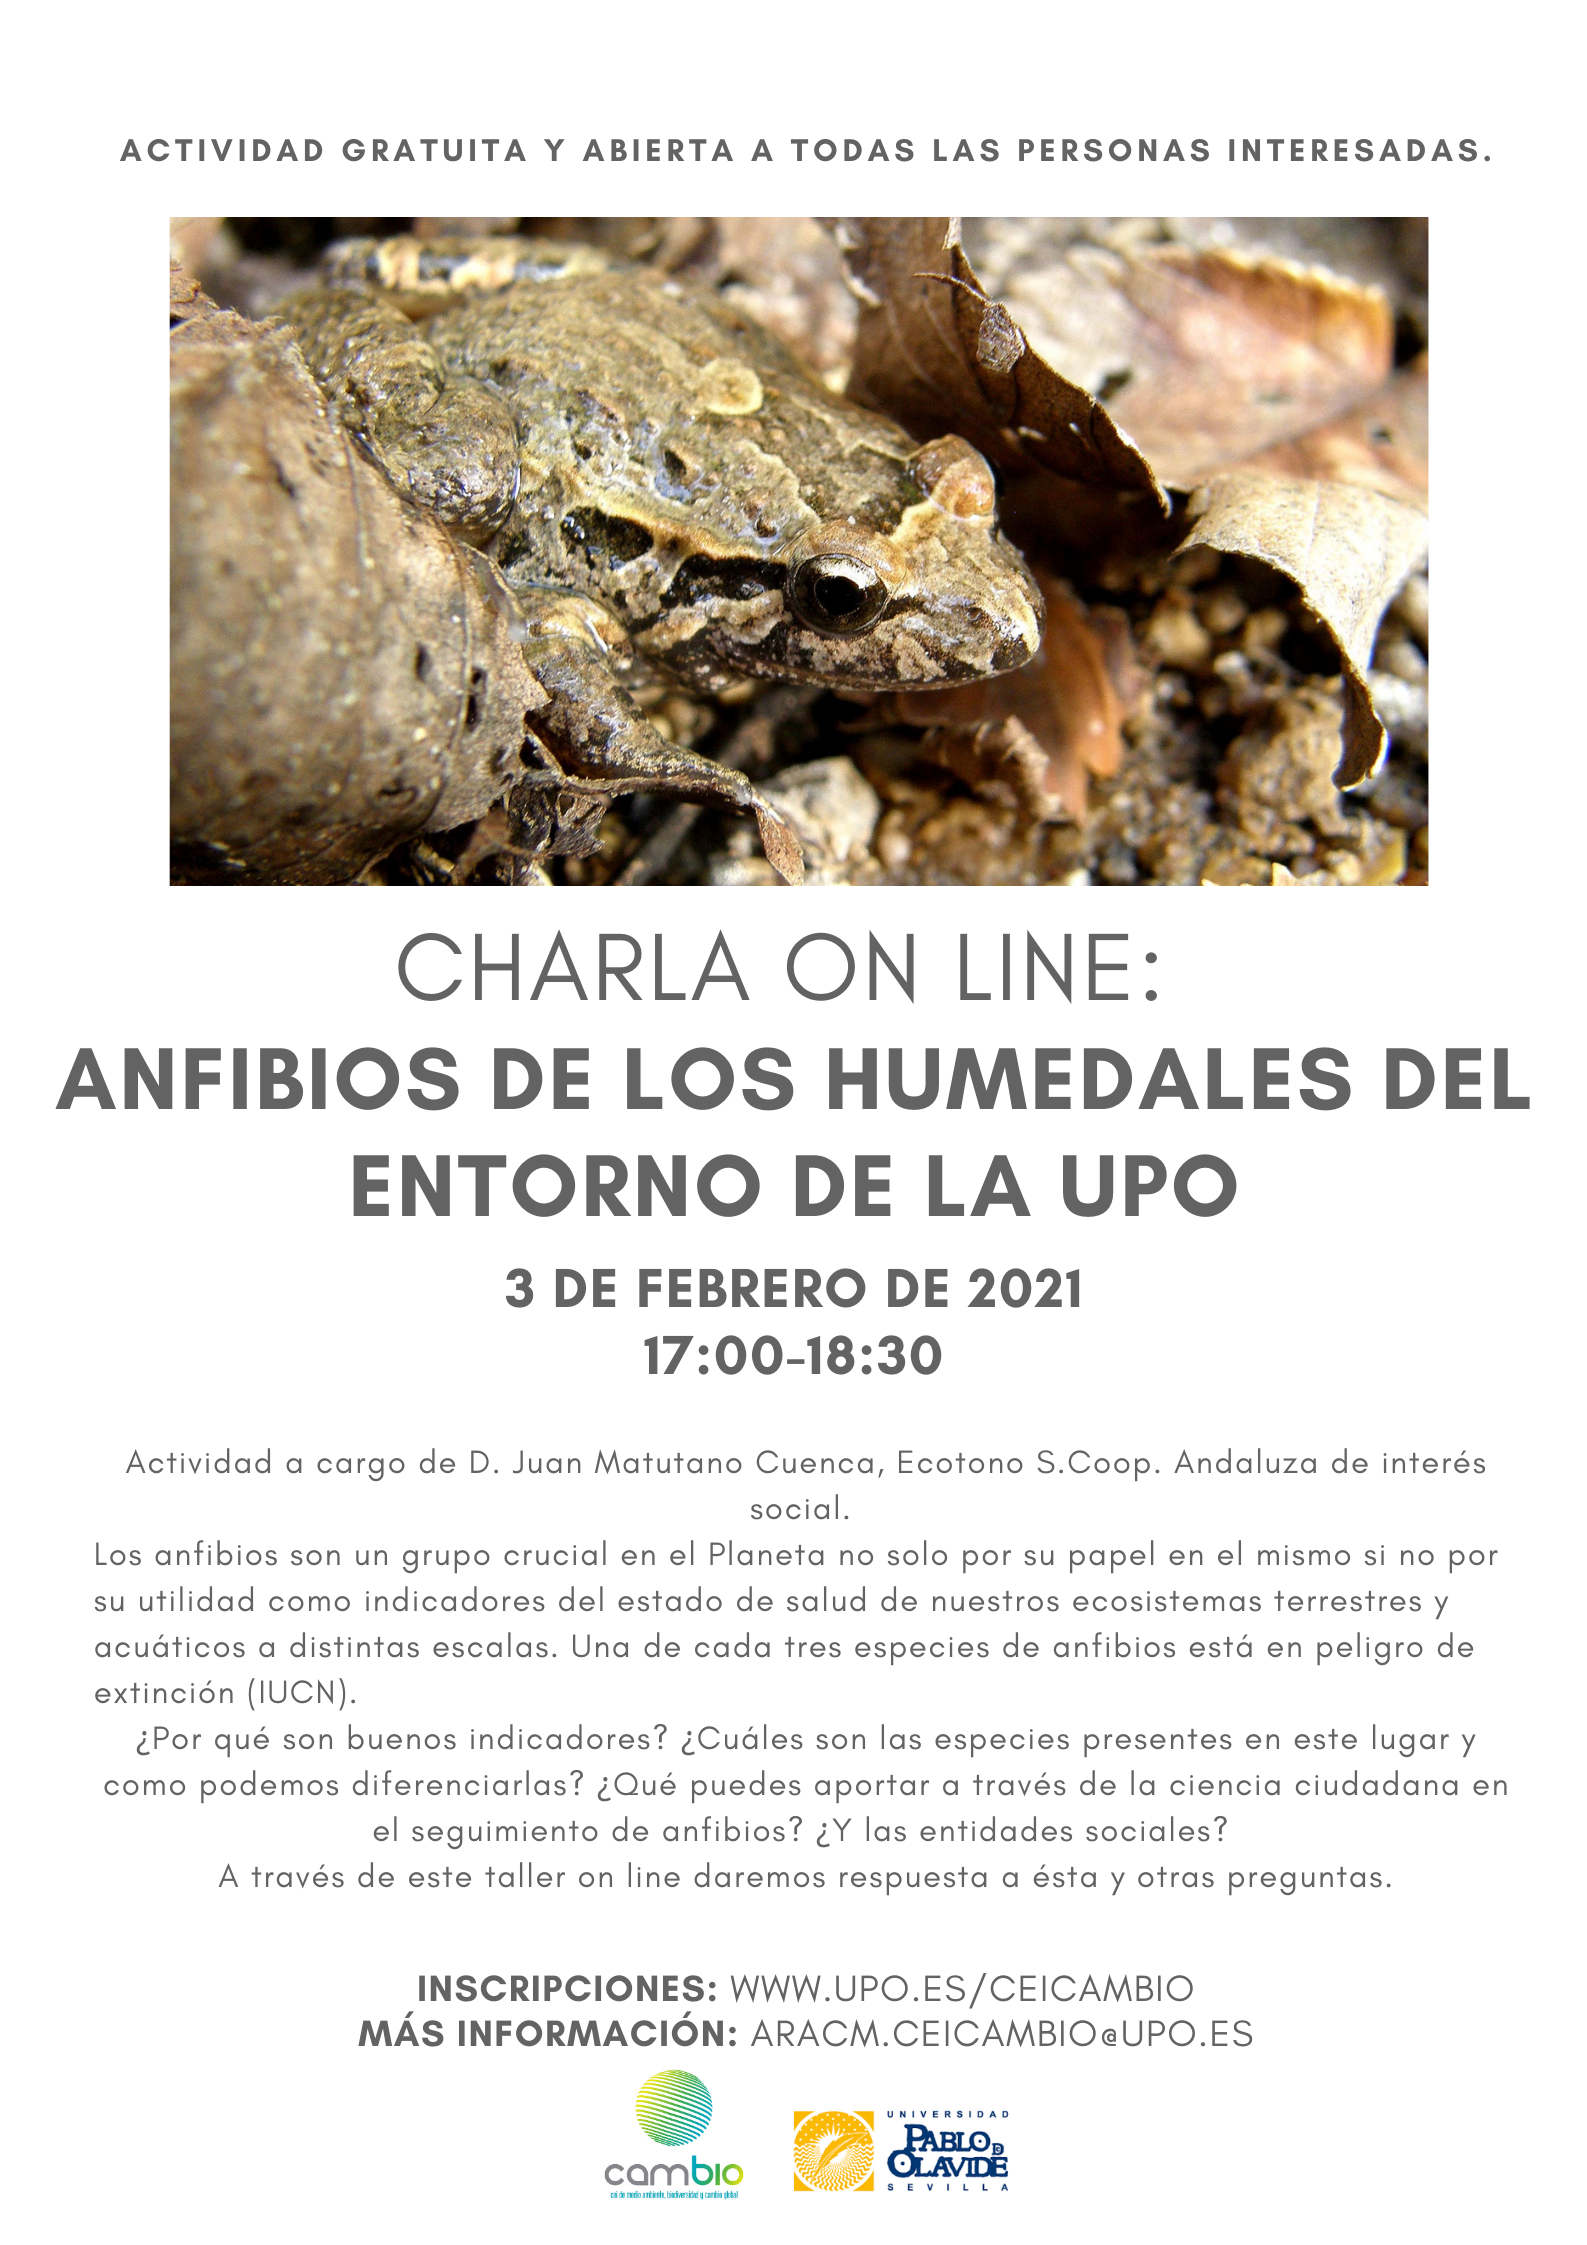 Charla online: Anfibios de los humedales del entorno de la UPO. El 3 de febrero a las 17 horas